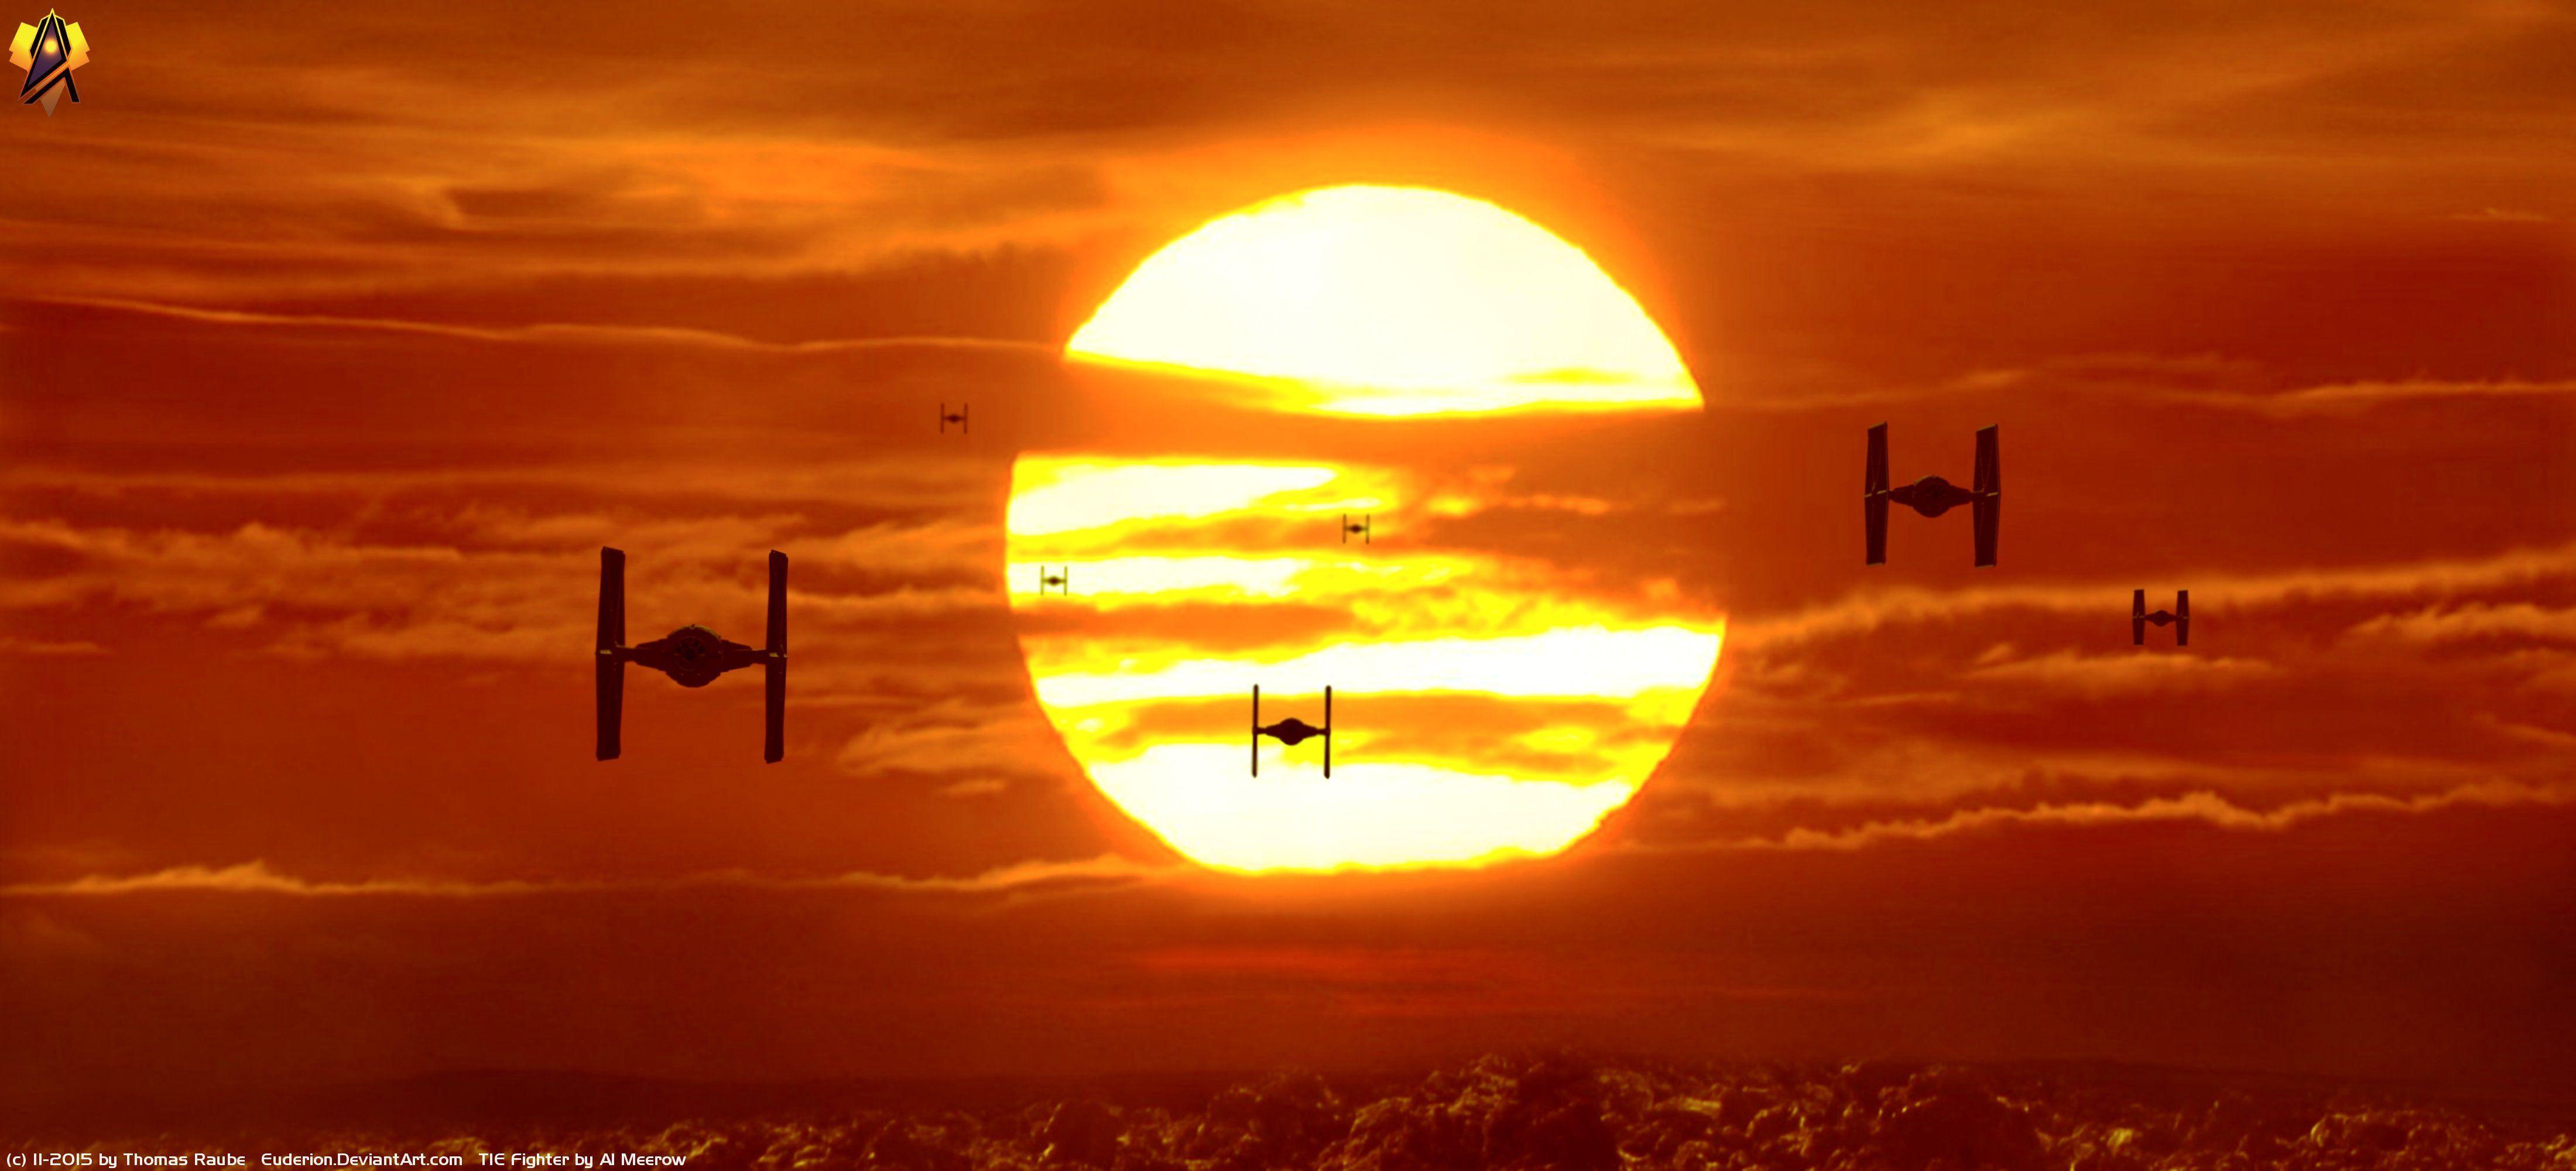 Movie Star Wars Episode VII: The Force Awakens Star Wars Tie Fighter